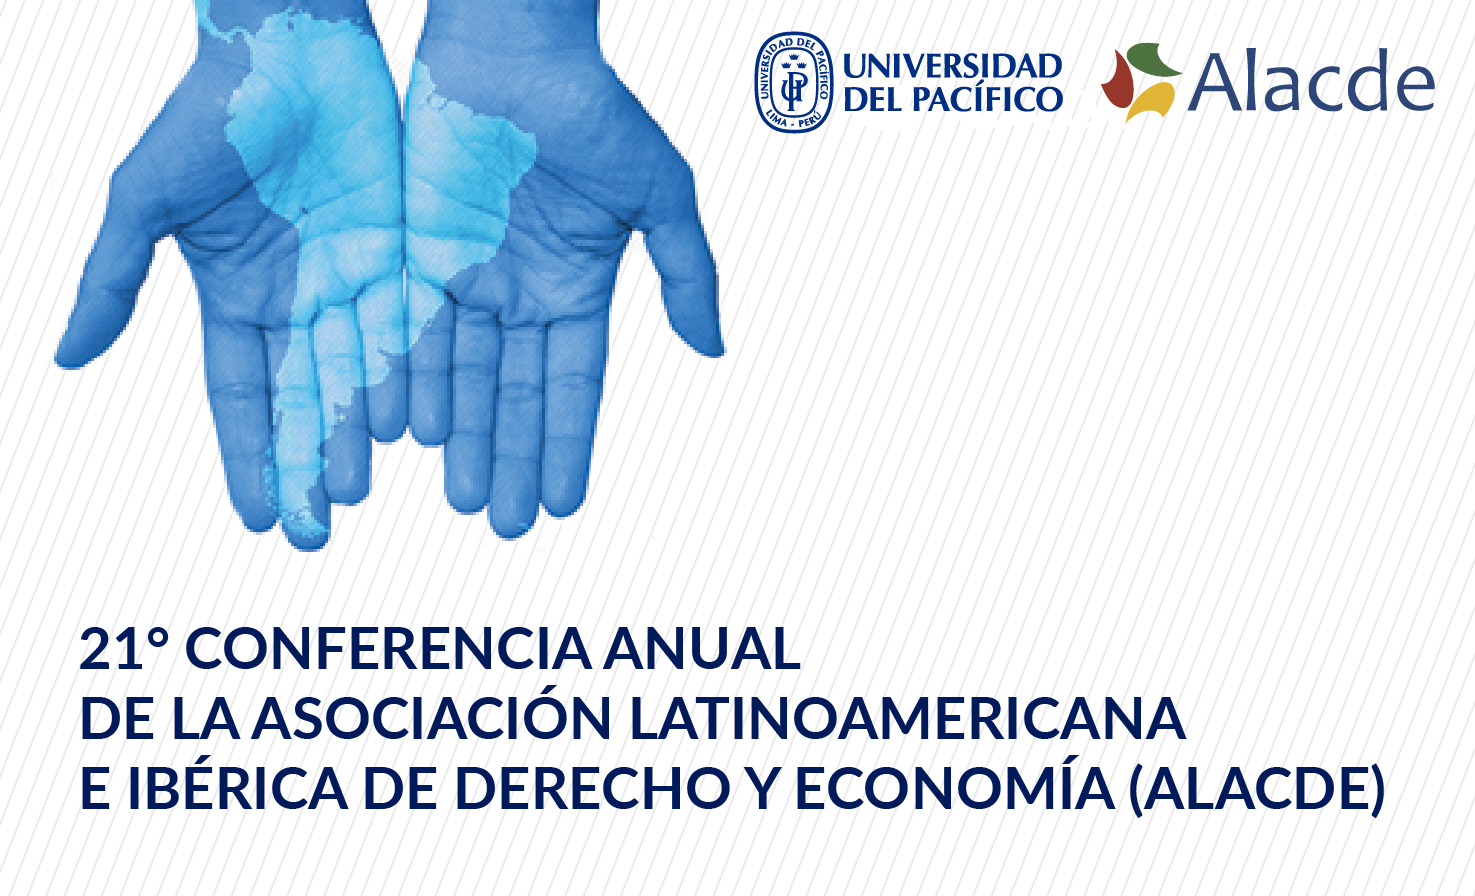 21° Conferencia anual de la asociación lationamericana e ibérica de derecho y economía (ALACDE)